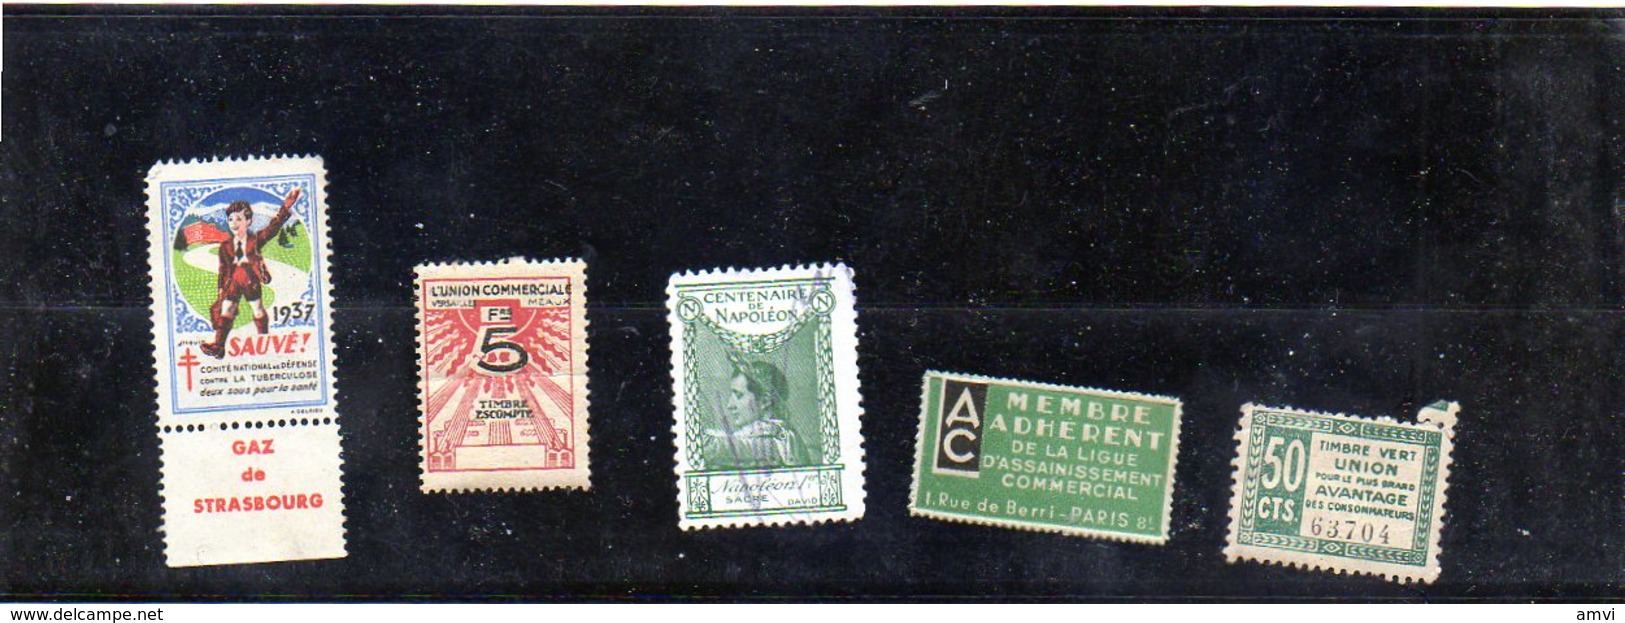 3876 - 5 Vignettes Tuberculose  1937  - Ligue Assainissement - Union Commerciale Plié Centenaire Napoleon Timbre Vert - Viñetas De Fantasía